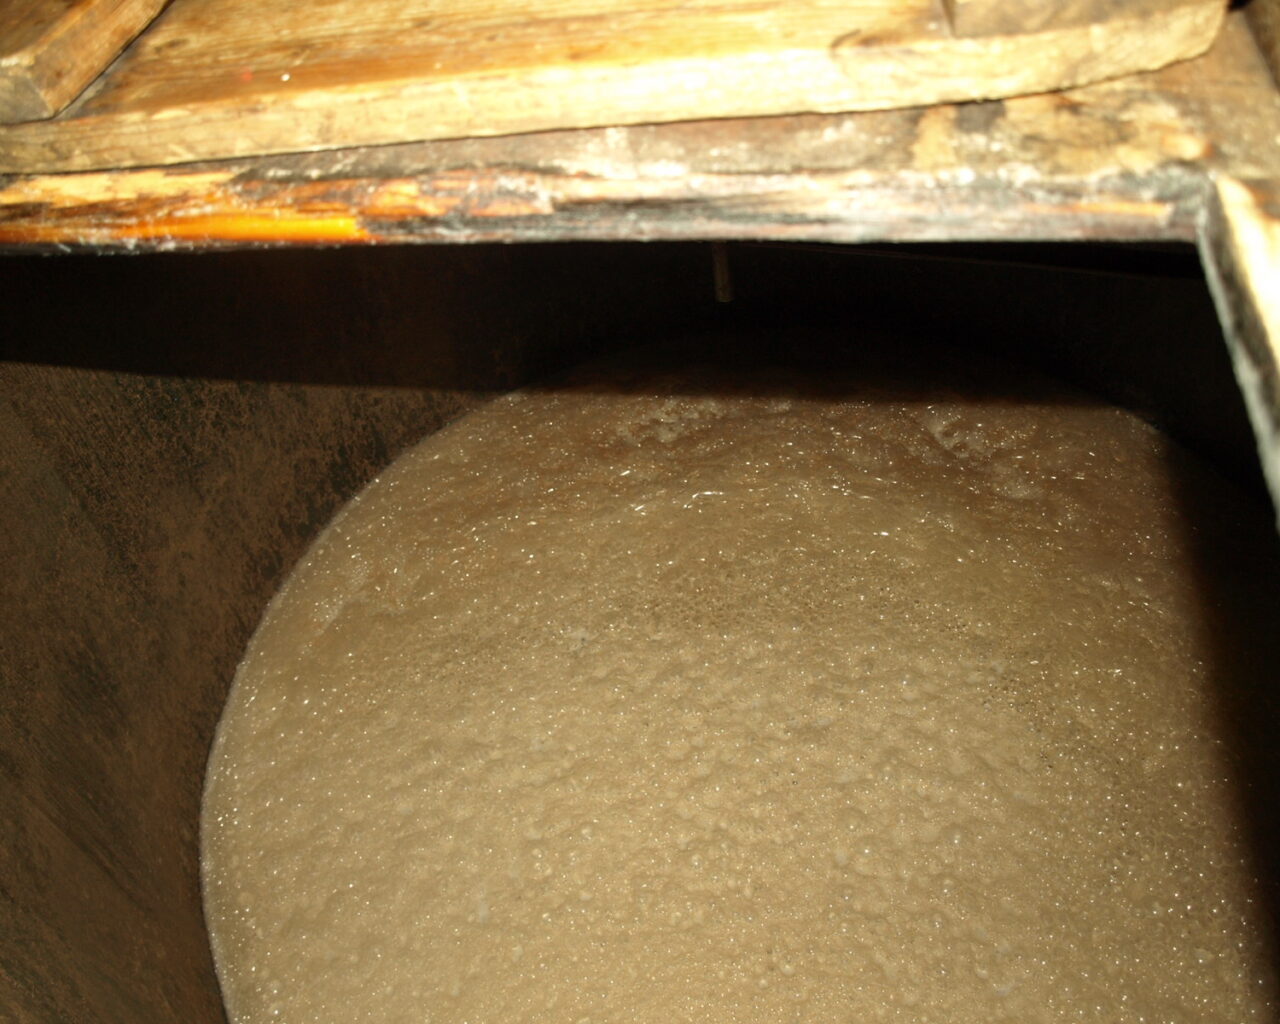 08 - La fermentation